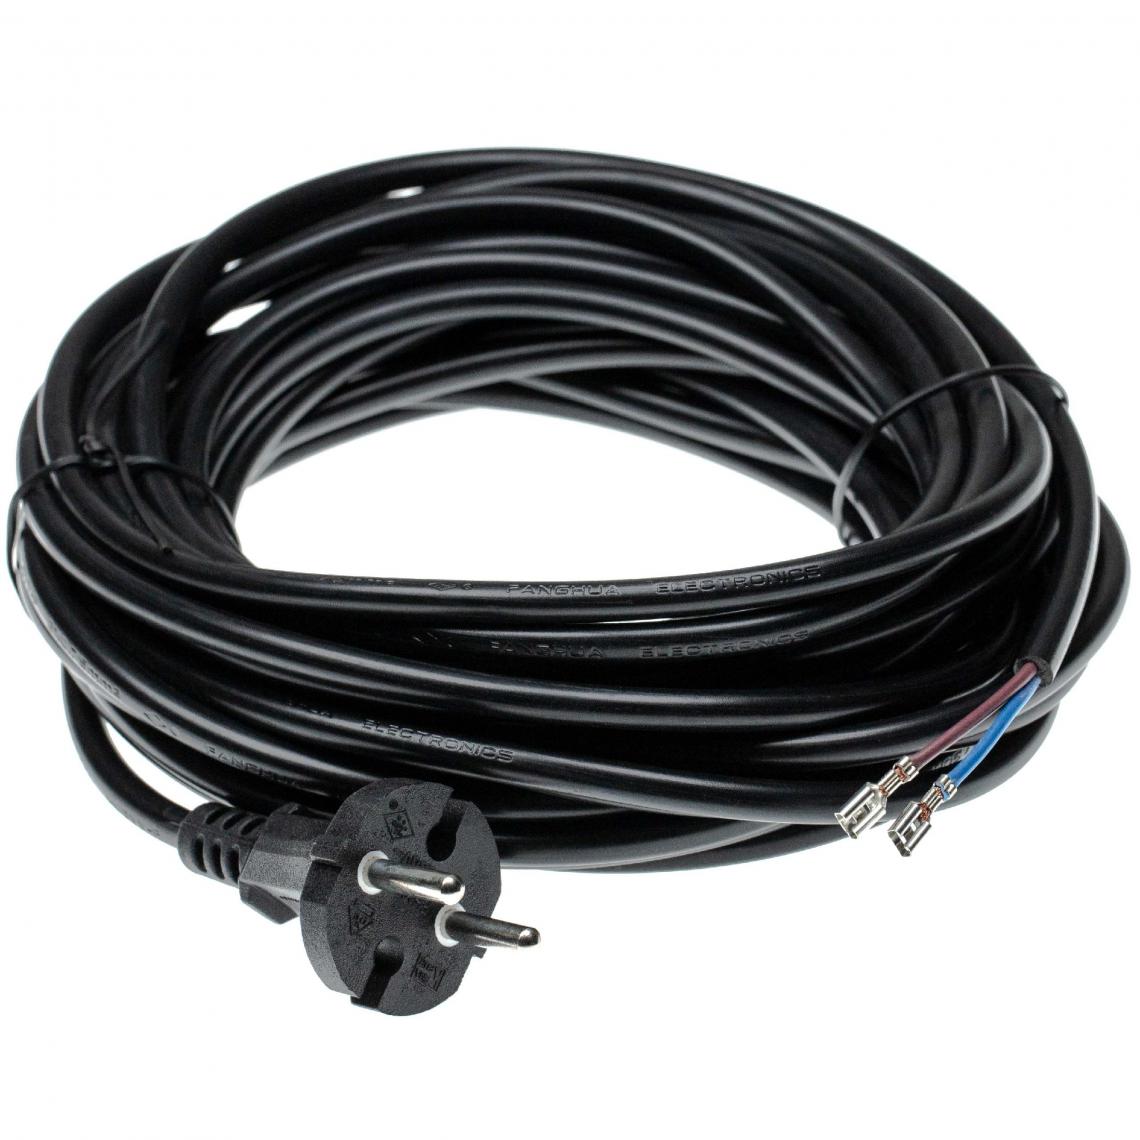 Vhbw - vhbw Câble électrique compatible avec Kärcher SE 4001, T12/1, WD3 200 aspirateurs - 10 m, 4000 W - Accessoire entretien des sols